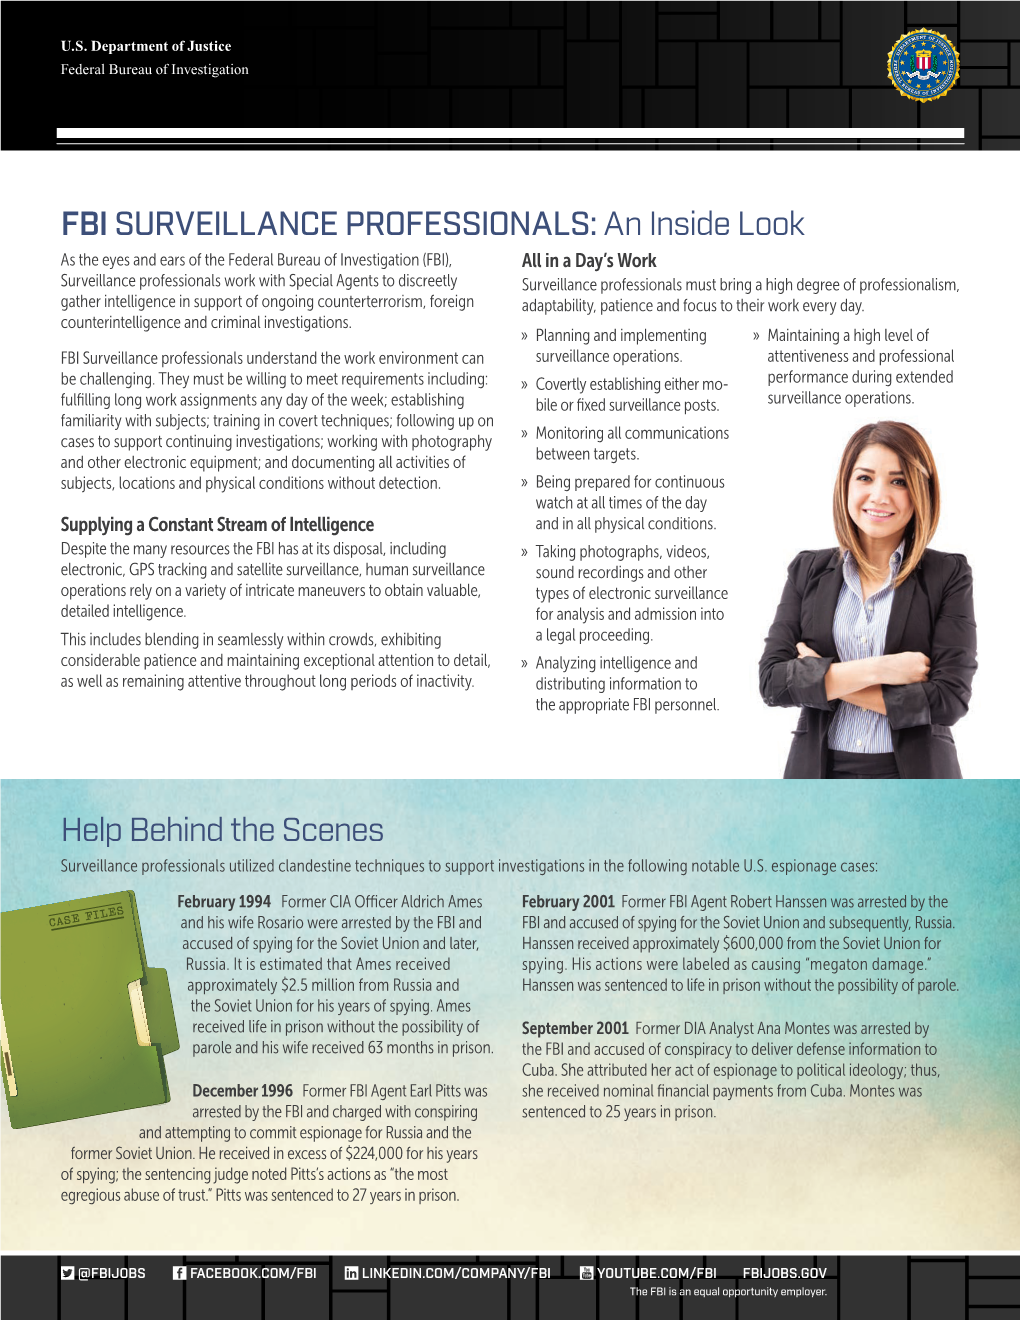 FBI SURVEILLANCE PROFESSIONALS: an Inside Look